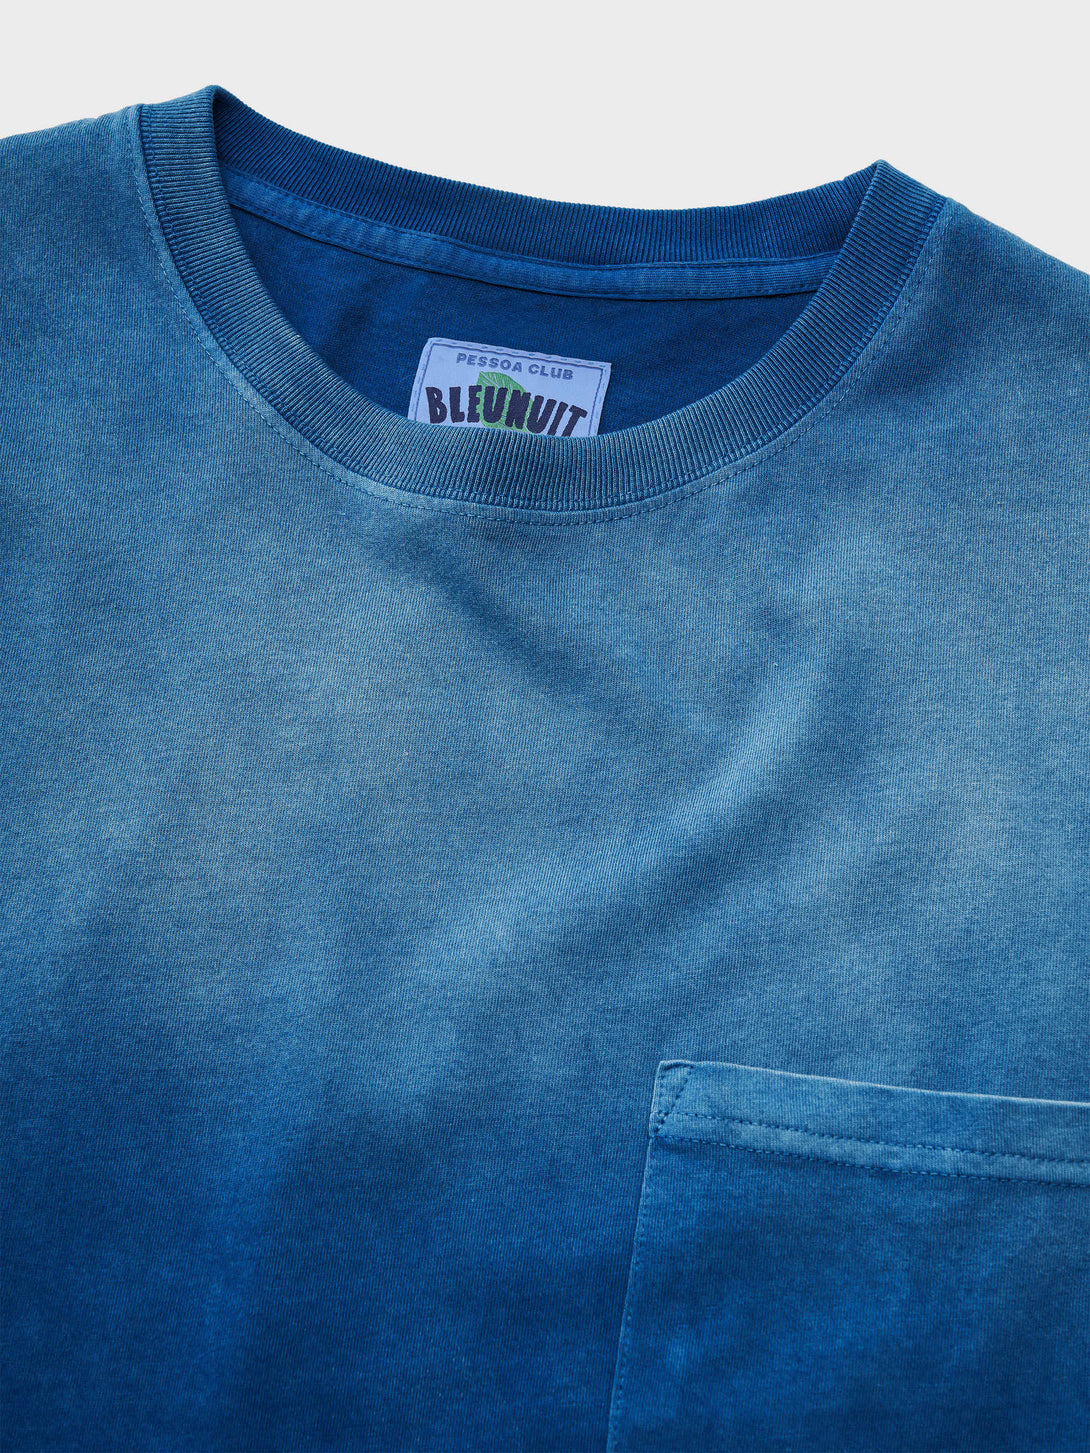 藍染めグラデーションTシャツの首元、濃淡の異なるブルーのグラデーションが特徴